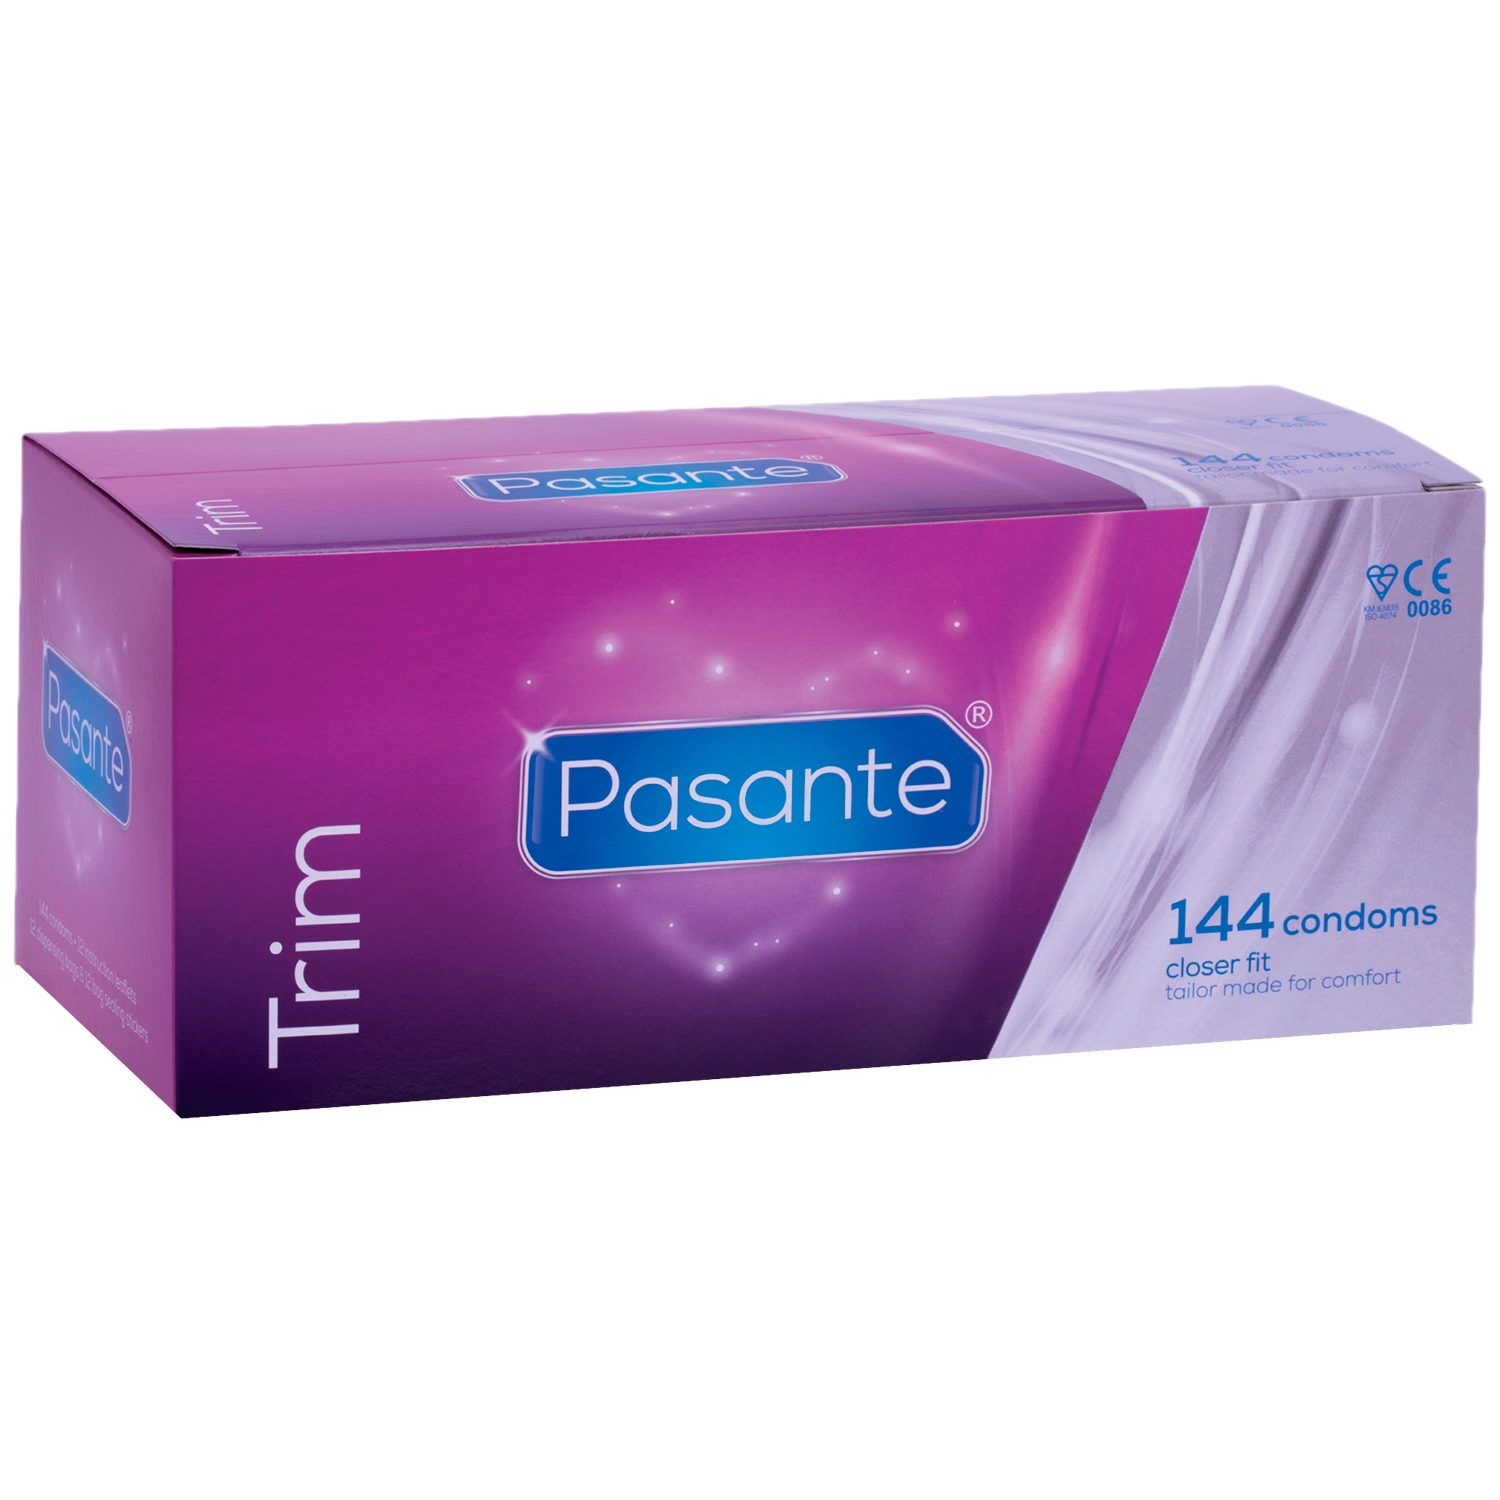 Pasante Trim Kondomer 144 stk - Klar thumbnail